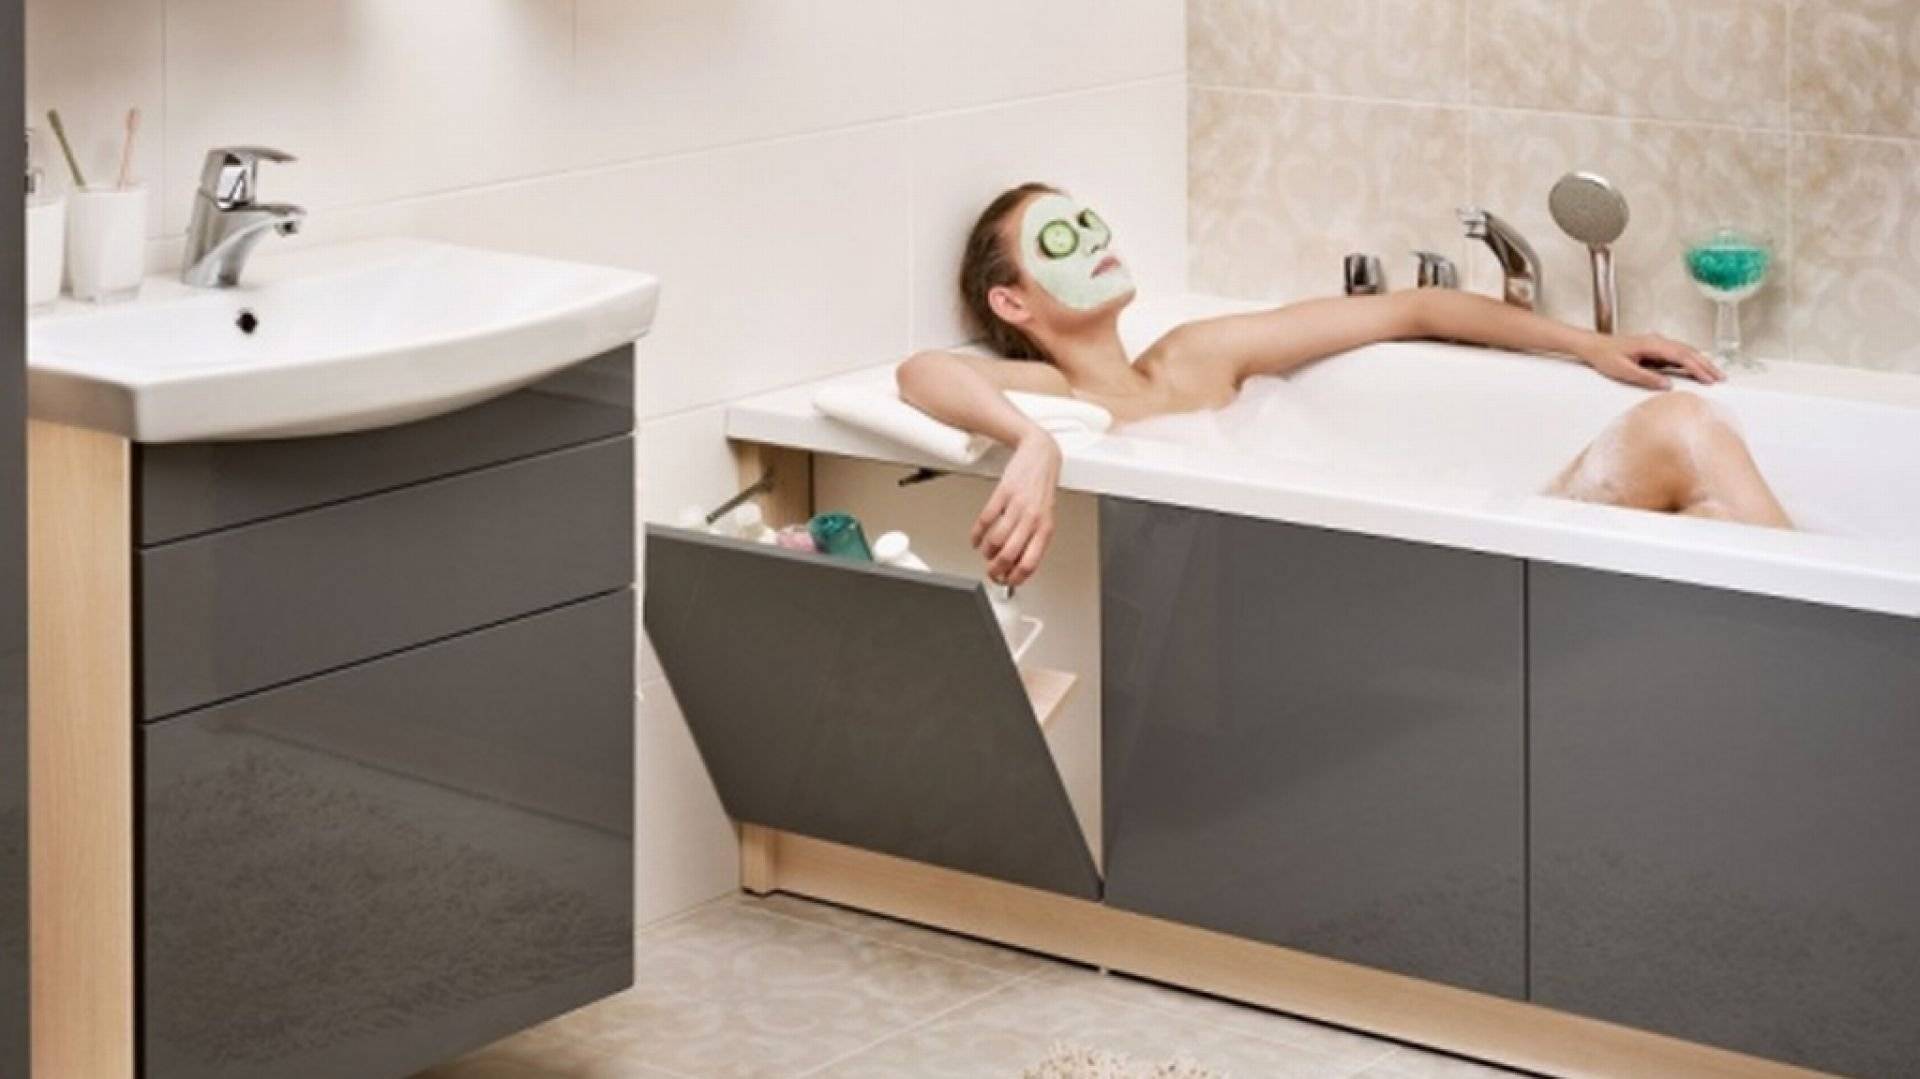 Вентилятор для ванной с датчиком влажности, вытяжка для ванной комнаты - установка своими руками по схеме